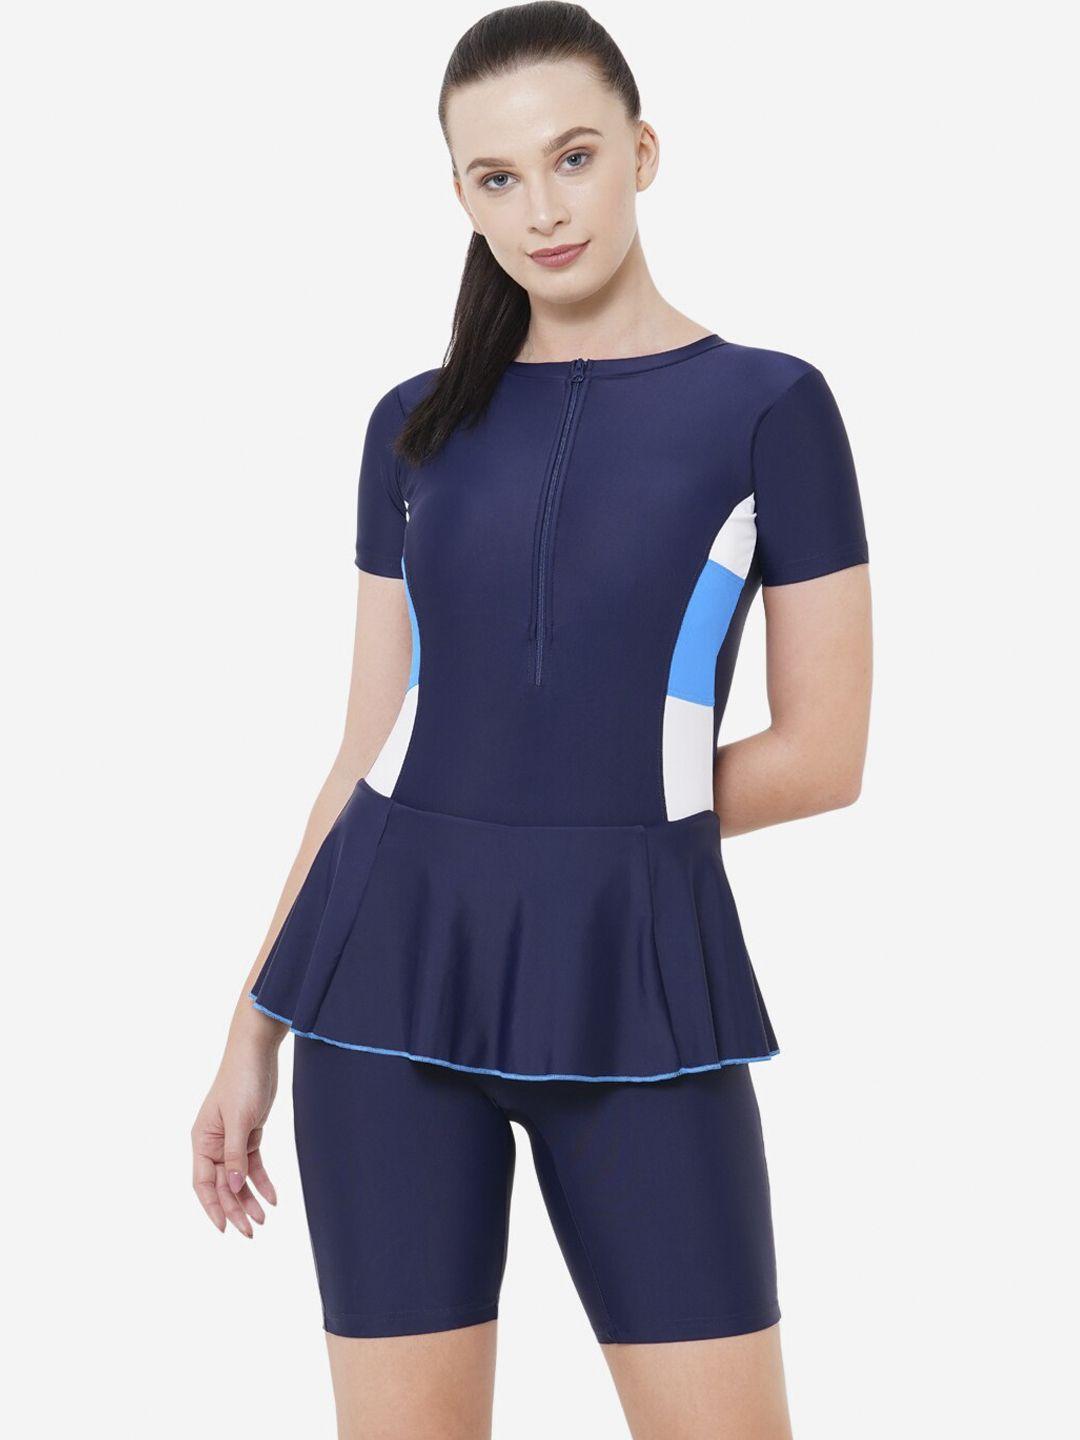 veloz women navy blue & white colourblocked swimming dress